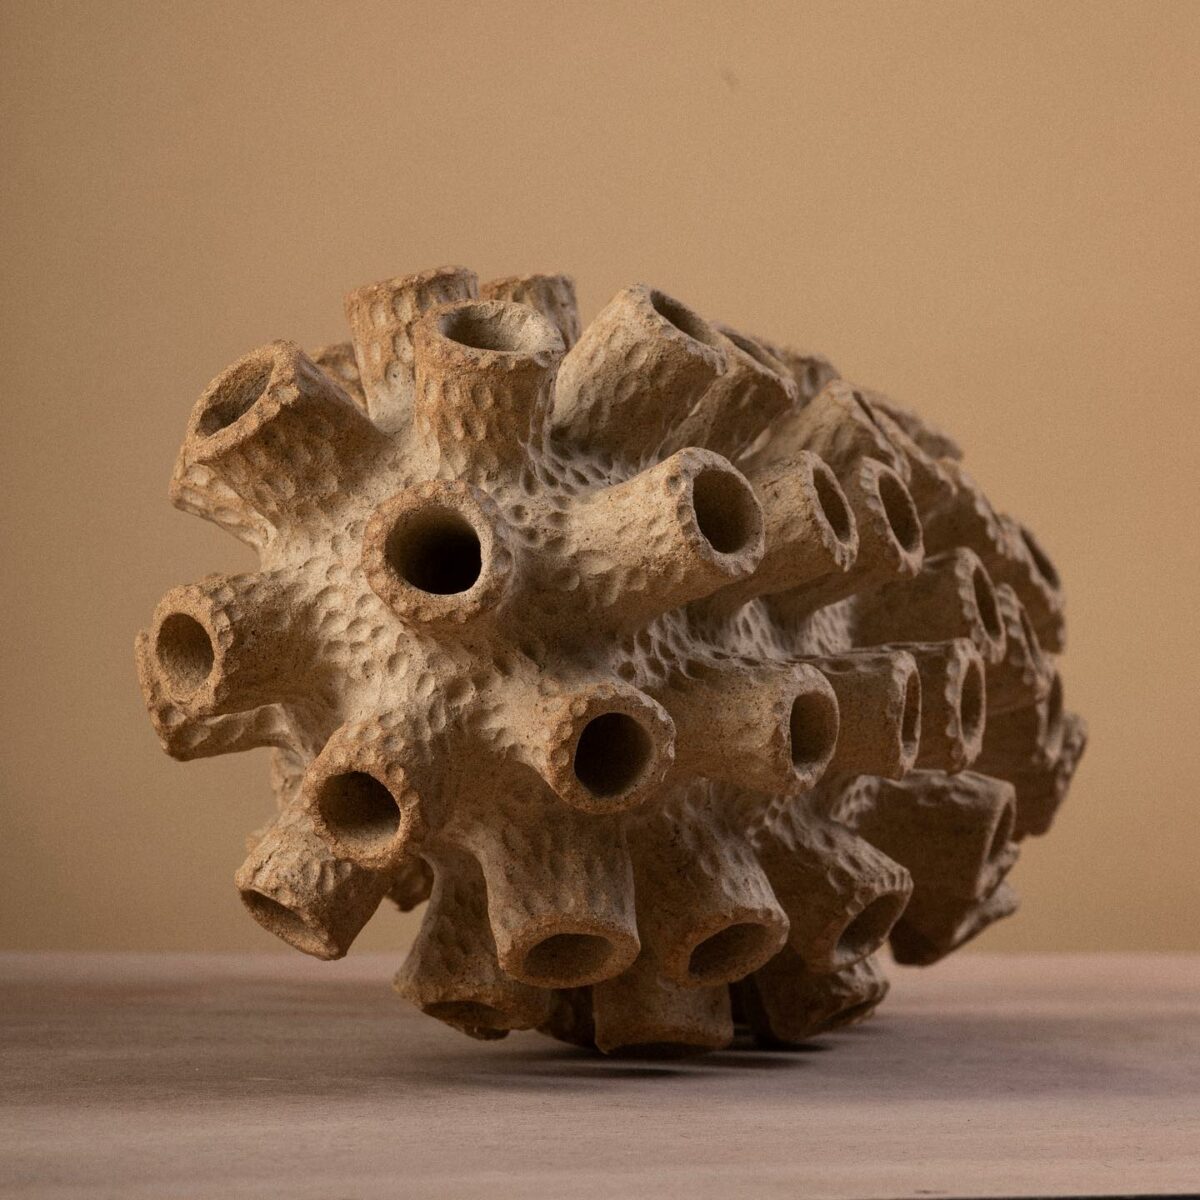 Amorphous Ceramic Vessels By Julie Bergeron (1)